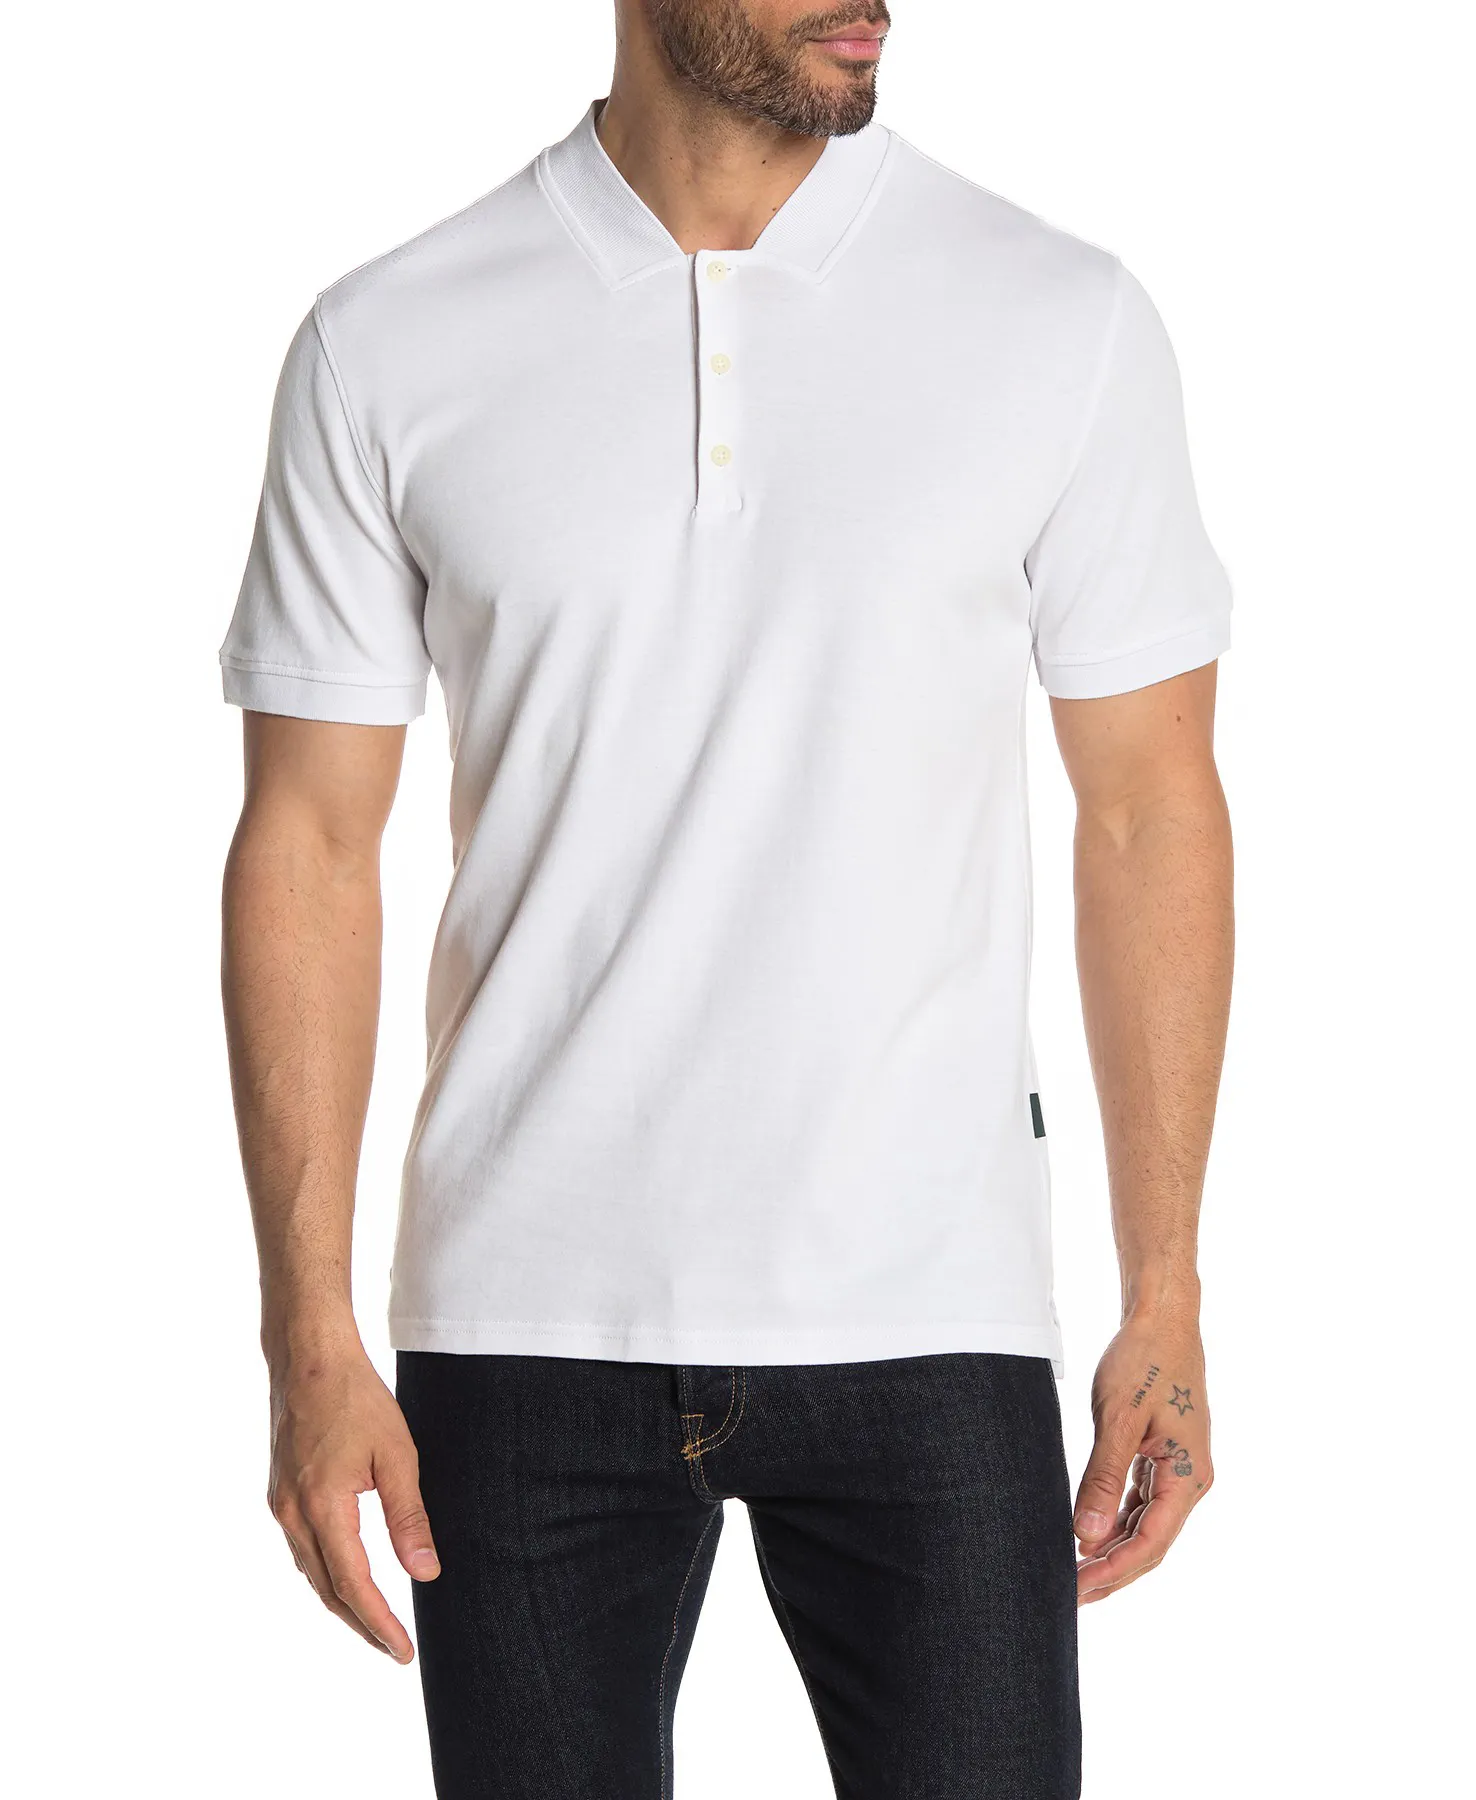 100% Baumwolle Herren Golf Polo T-Shirt mit Rippen kragen